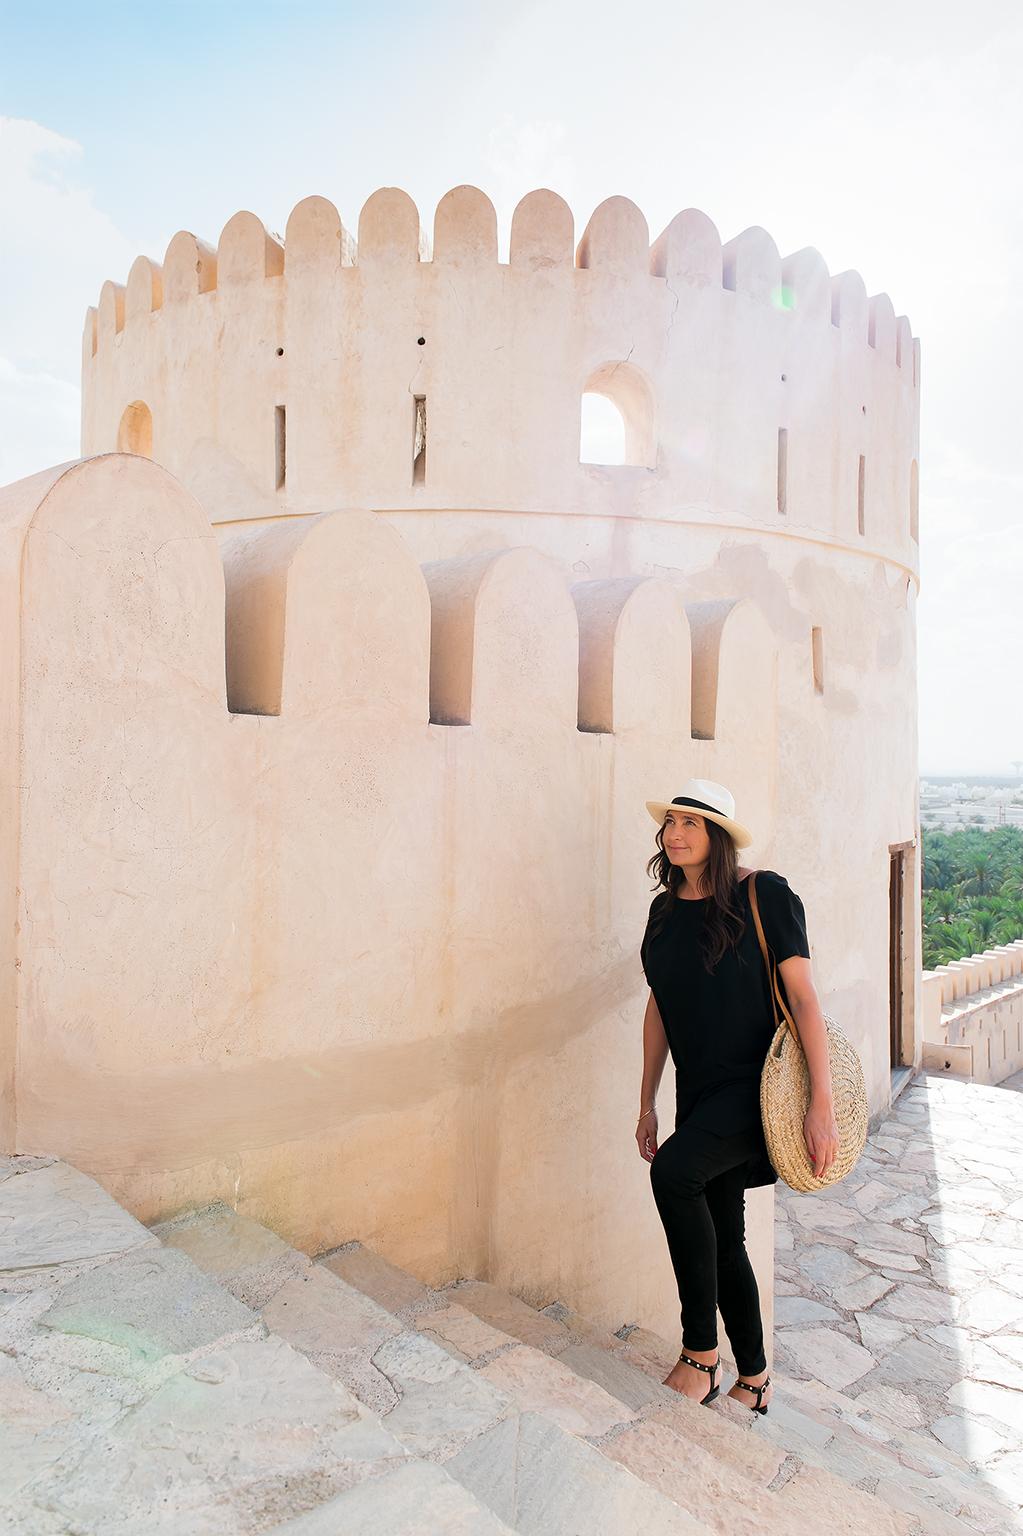 Inspiration 
Die Möbelfamilie Nizwa ist inspiriert von den abgerundeten Türmen der Festung Nizwa in Oman und dem Ombré-Farbeffekt, der durch das darauf fallende Sonnenlicht entsteht.

Handwerk 
Die italienischen Ahornfurniere werden sofort nach dem